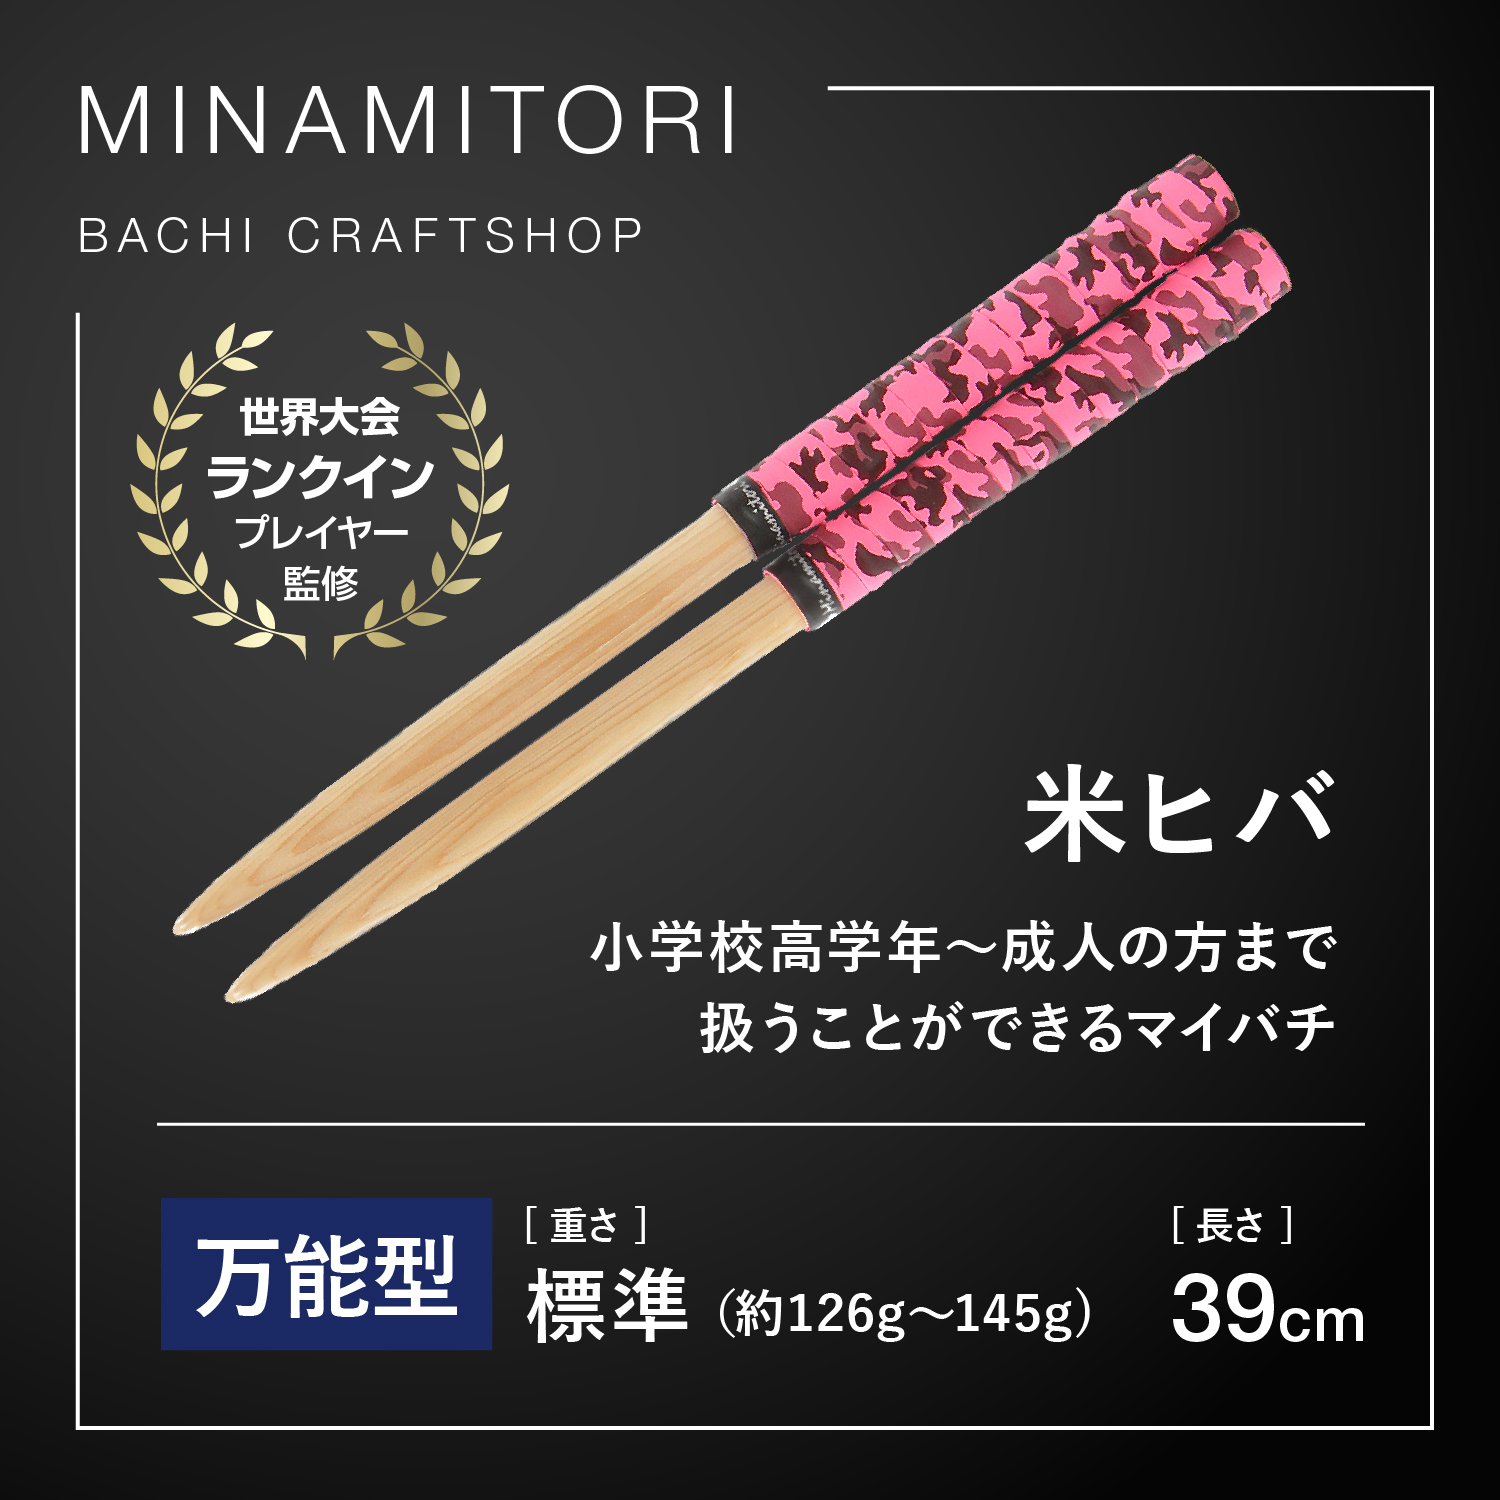 Minamitoriバチ工房 マイバチ 米ヒバ 39cm 重さ:標準 万能型（迷彩 